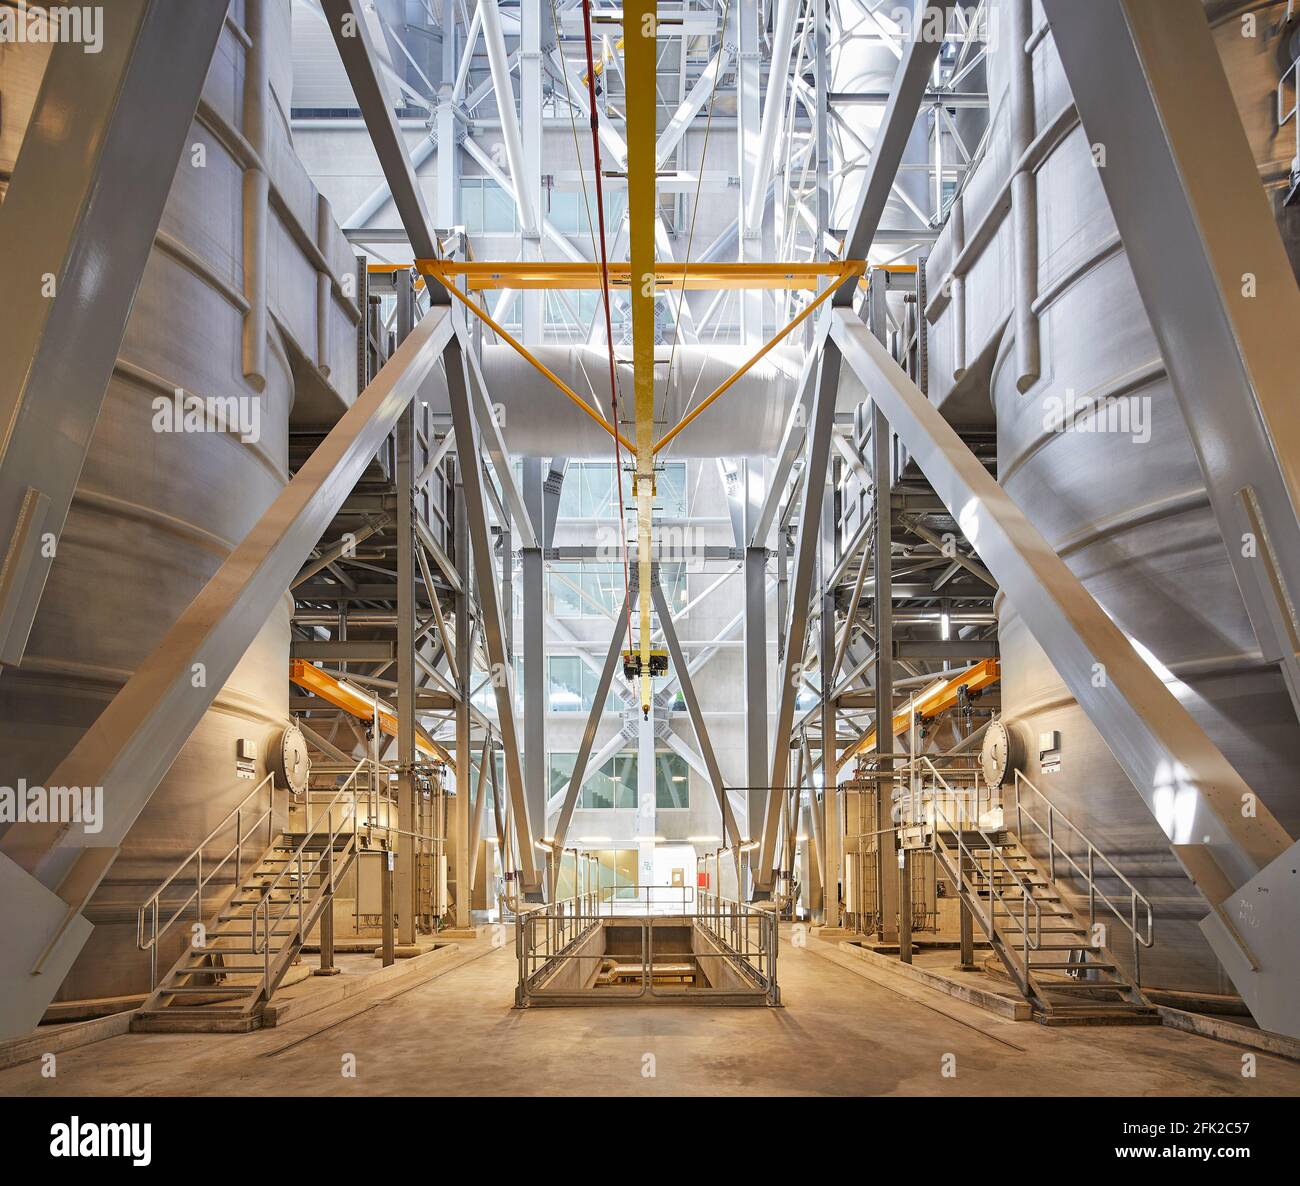 Interior de planta industrial. Central de CoppenHill, Copenhague, Dinamarca. Arquitecto: Grupo BIG Bjarke Ingels, 2019. Foto de stock